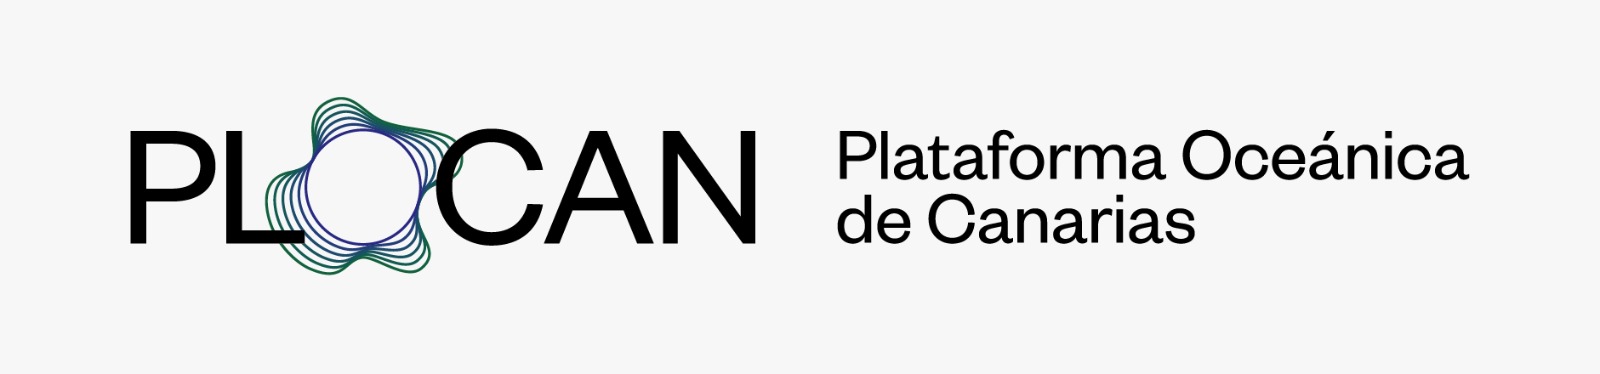 Plataforma Oceánica de Canarias